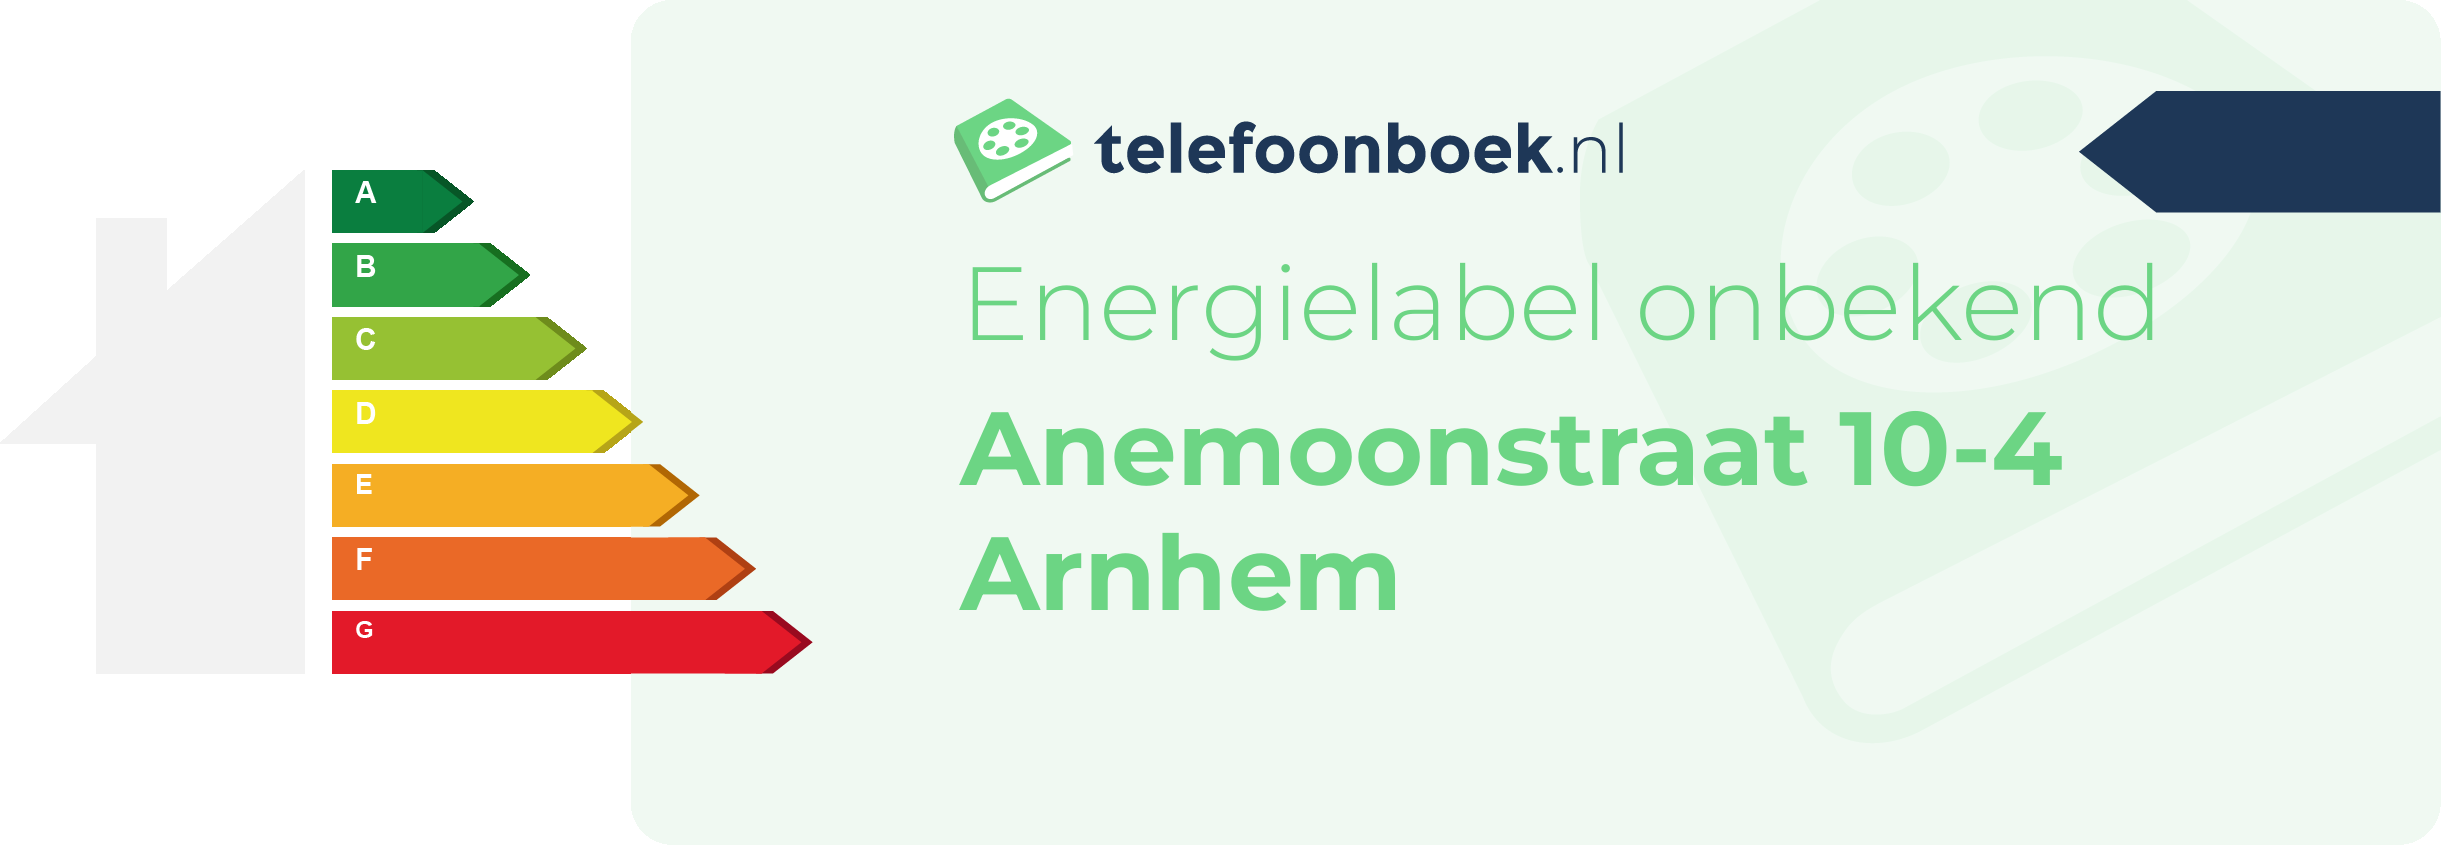 Energielabel Anemoonstraat 10-4 Arnhem